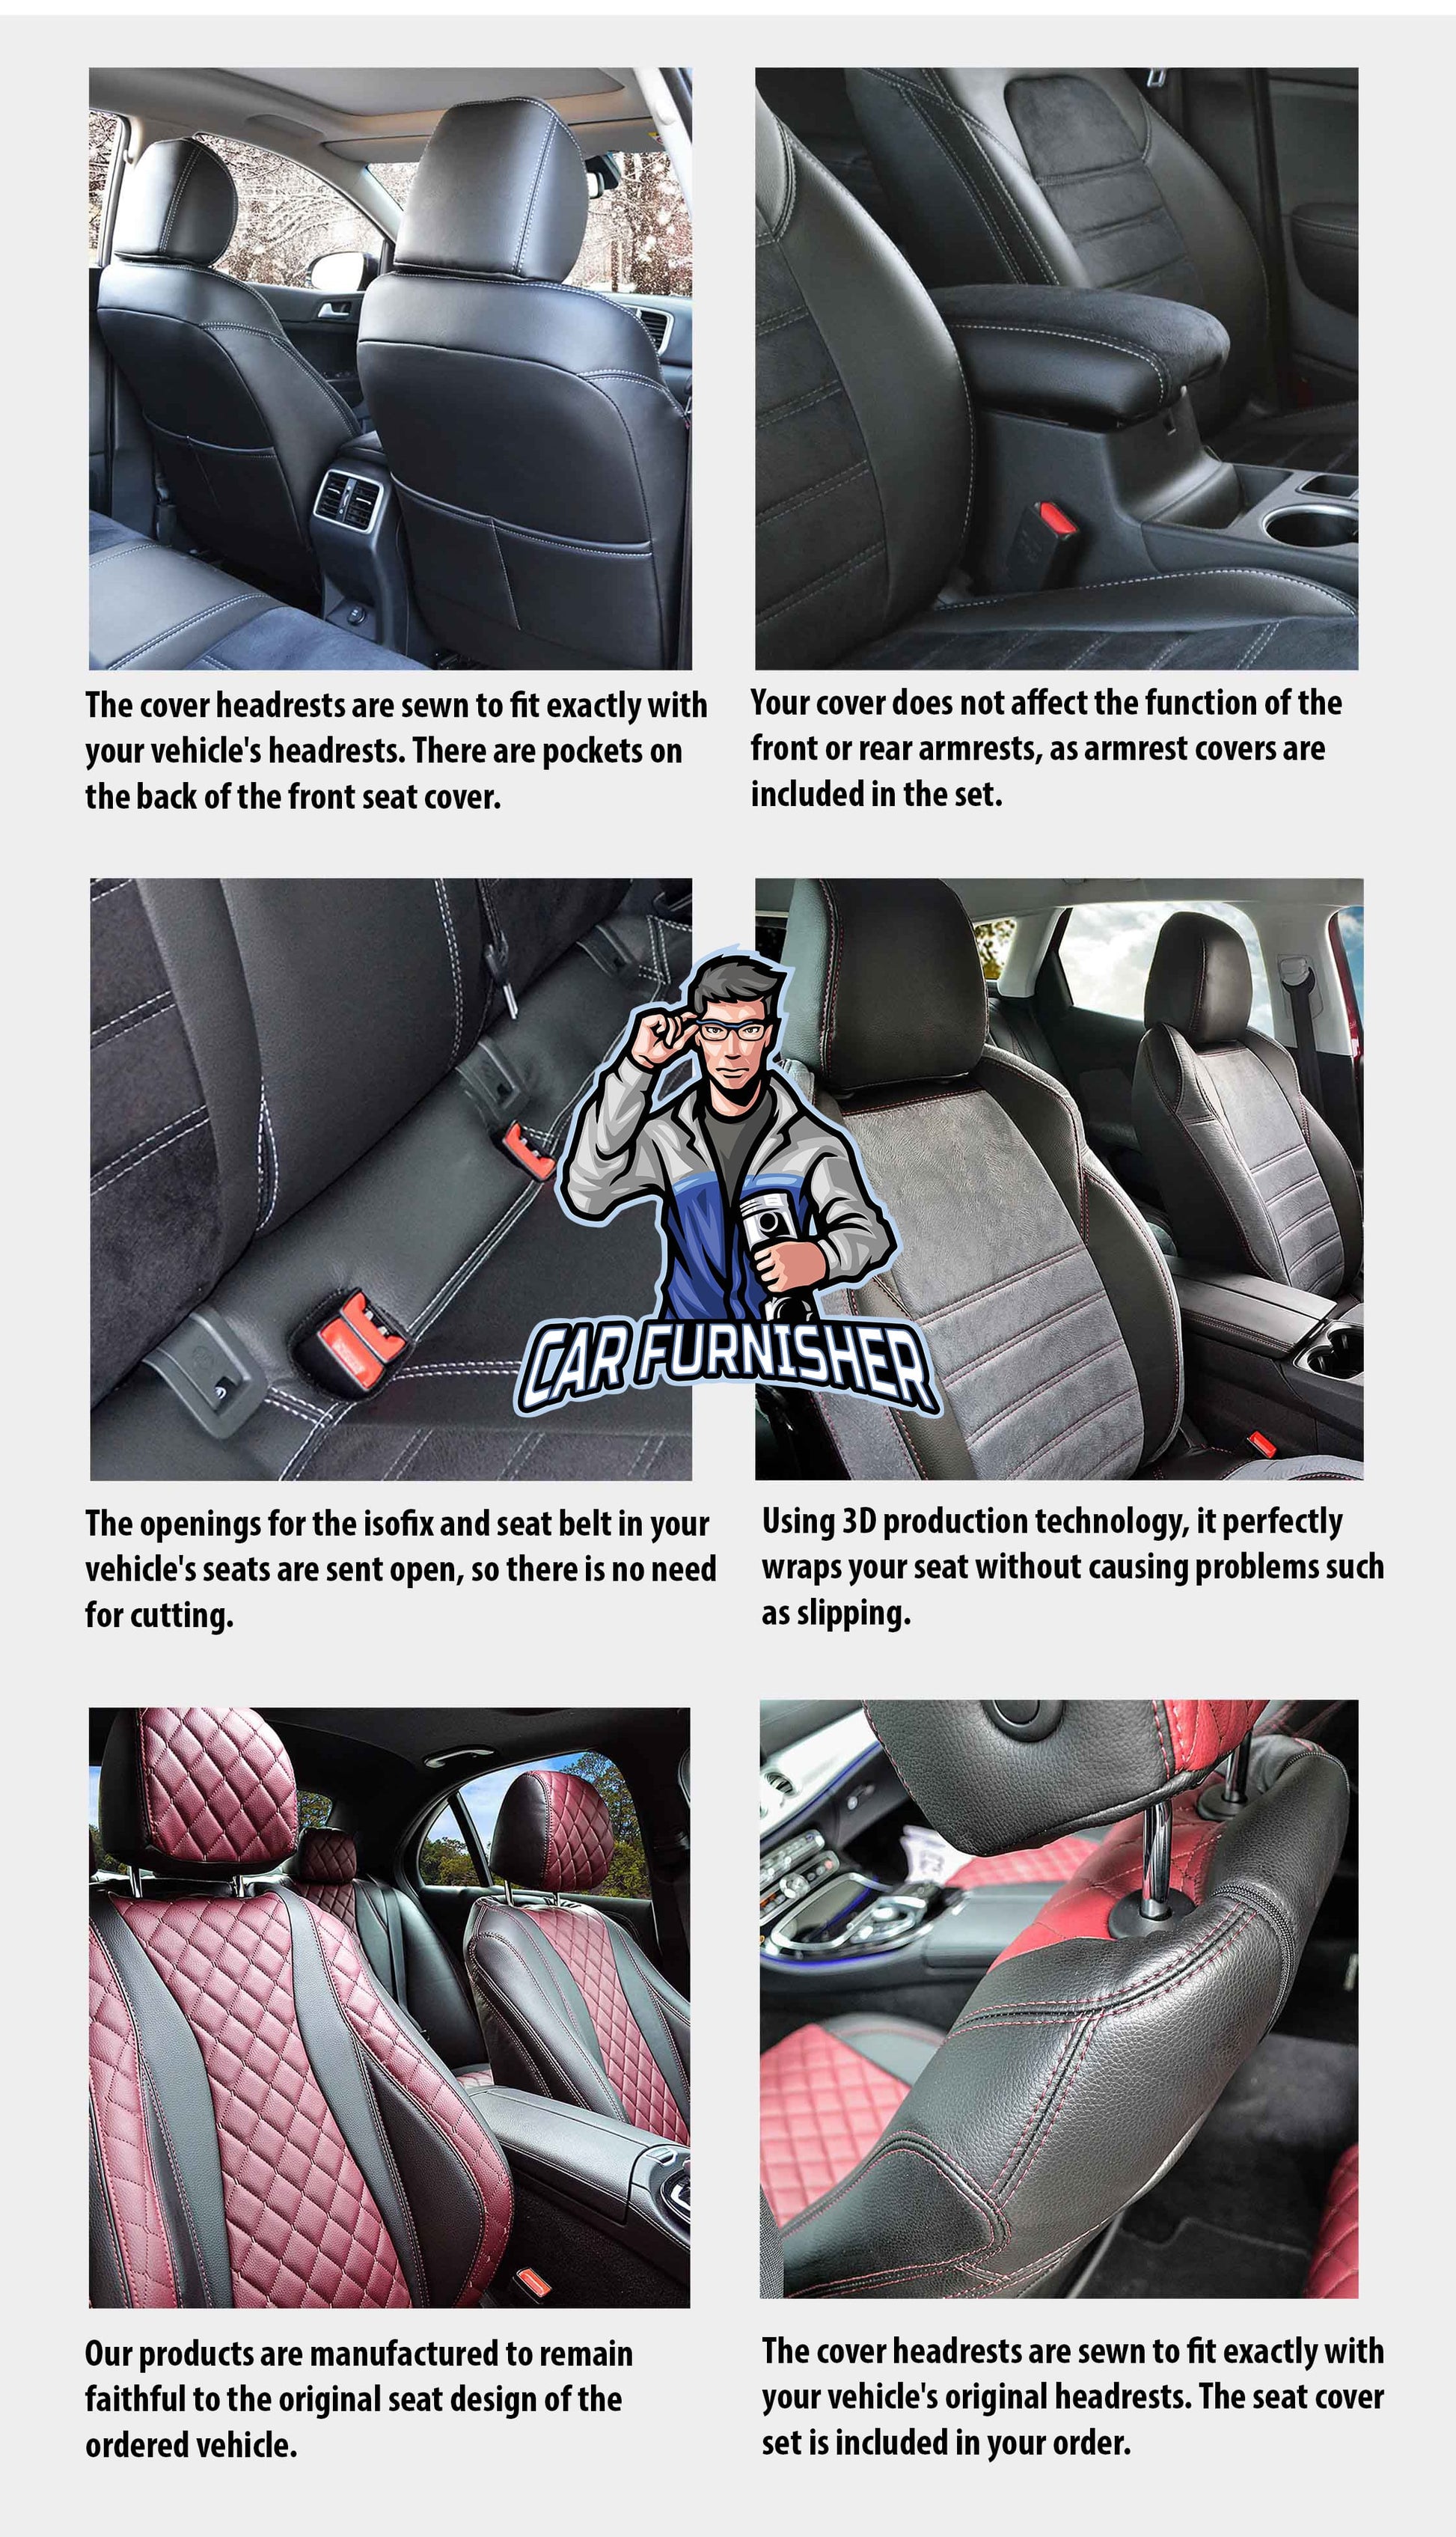 Toyota Prius Seat Cover Milano Suede Design Black Leather & Suede Fabric